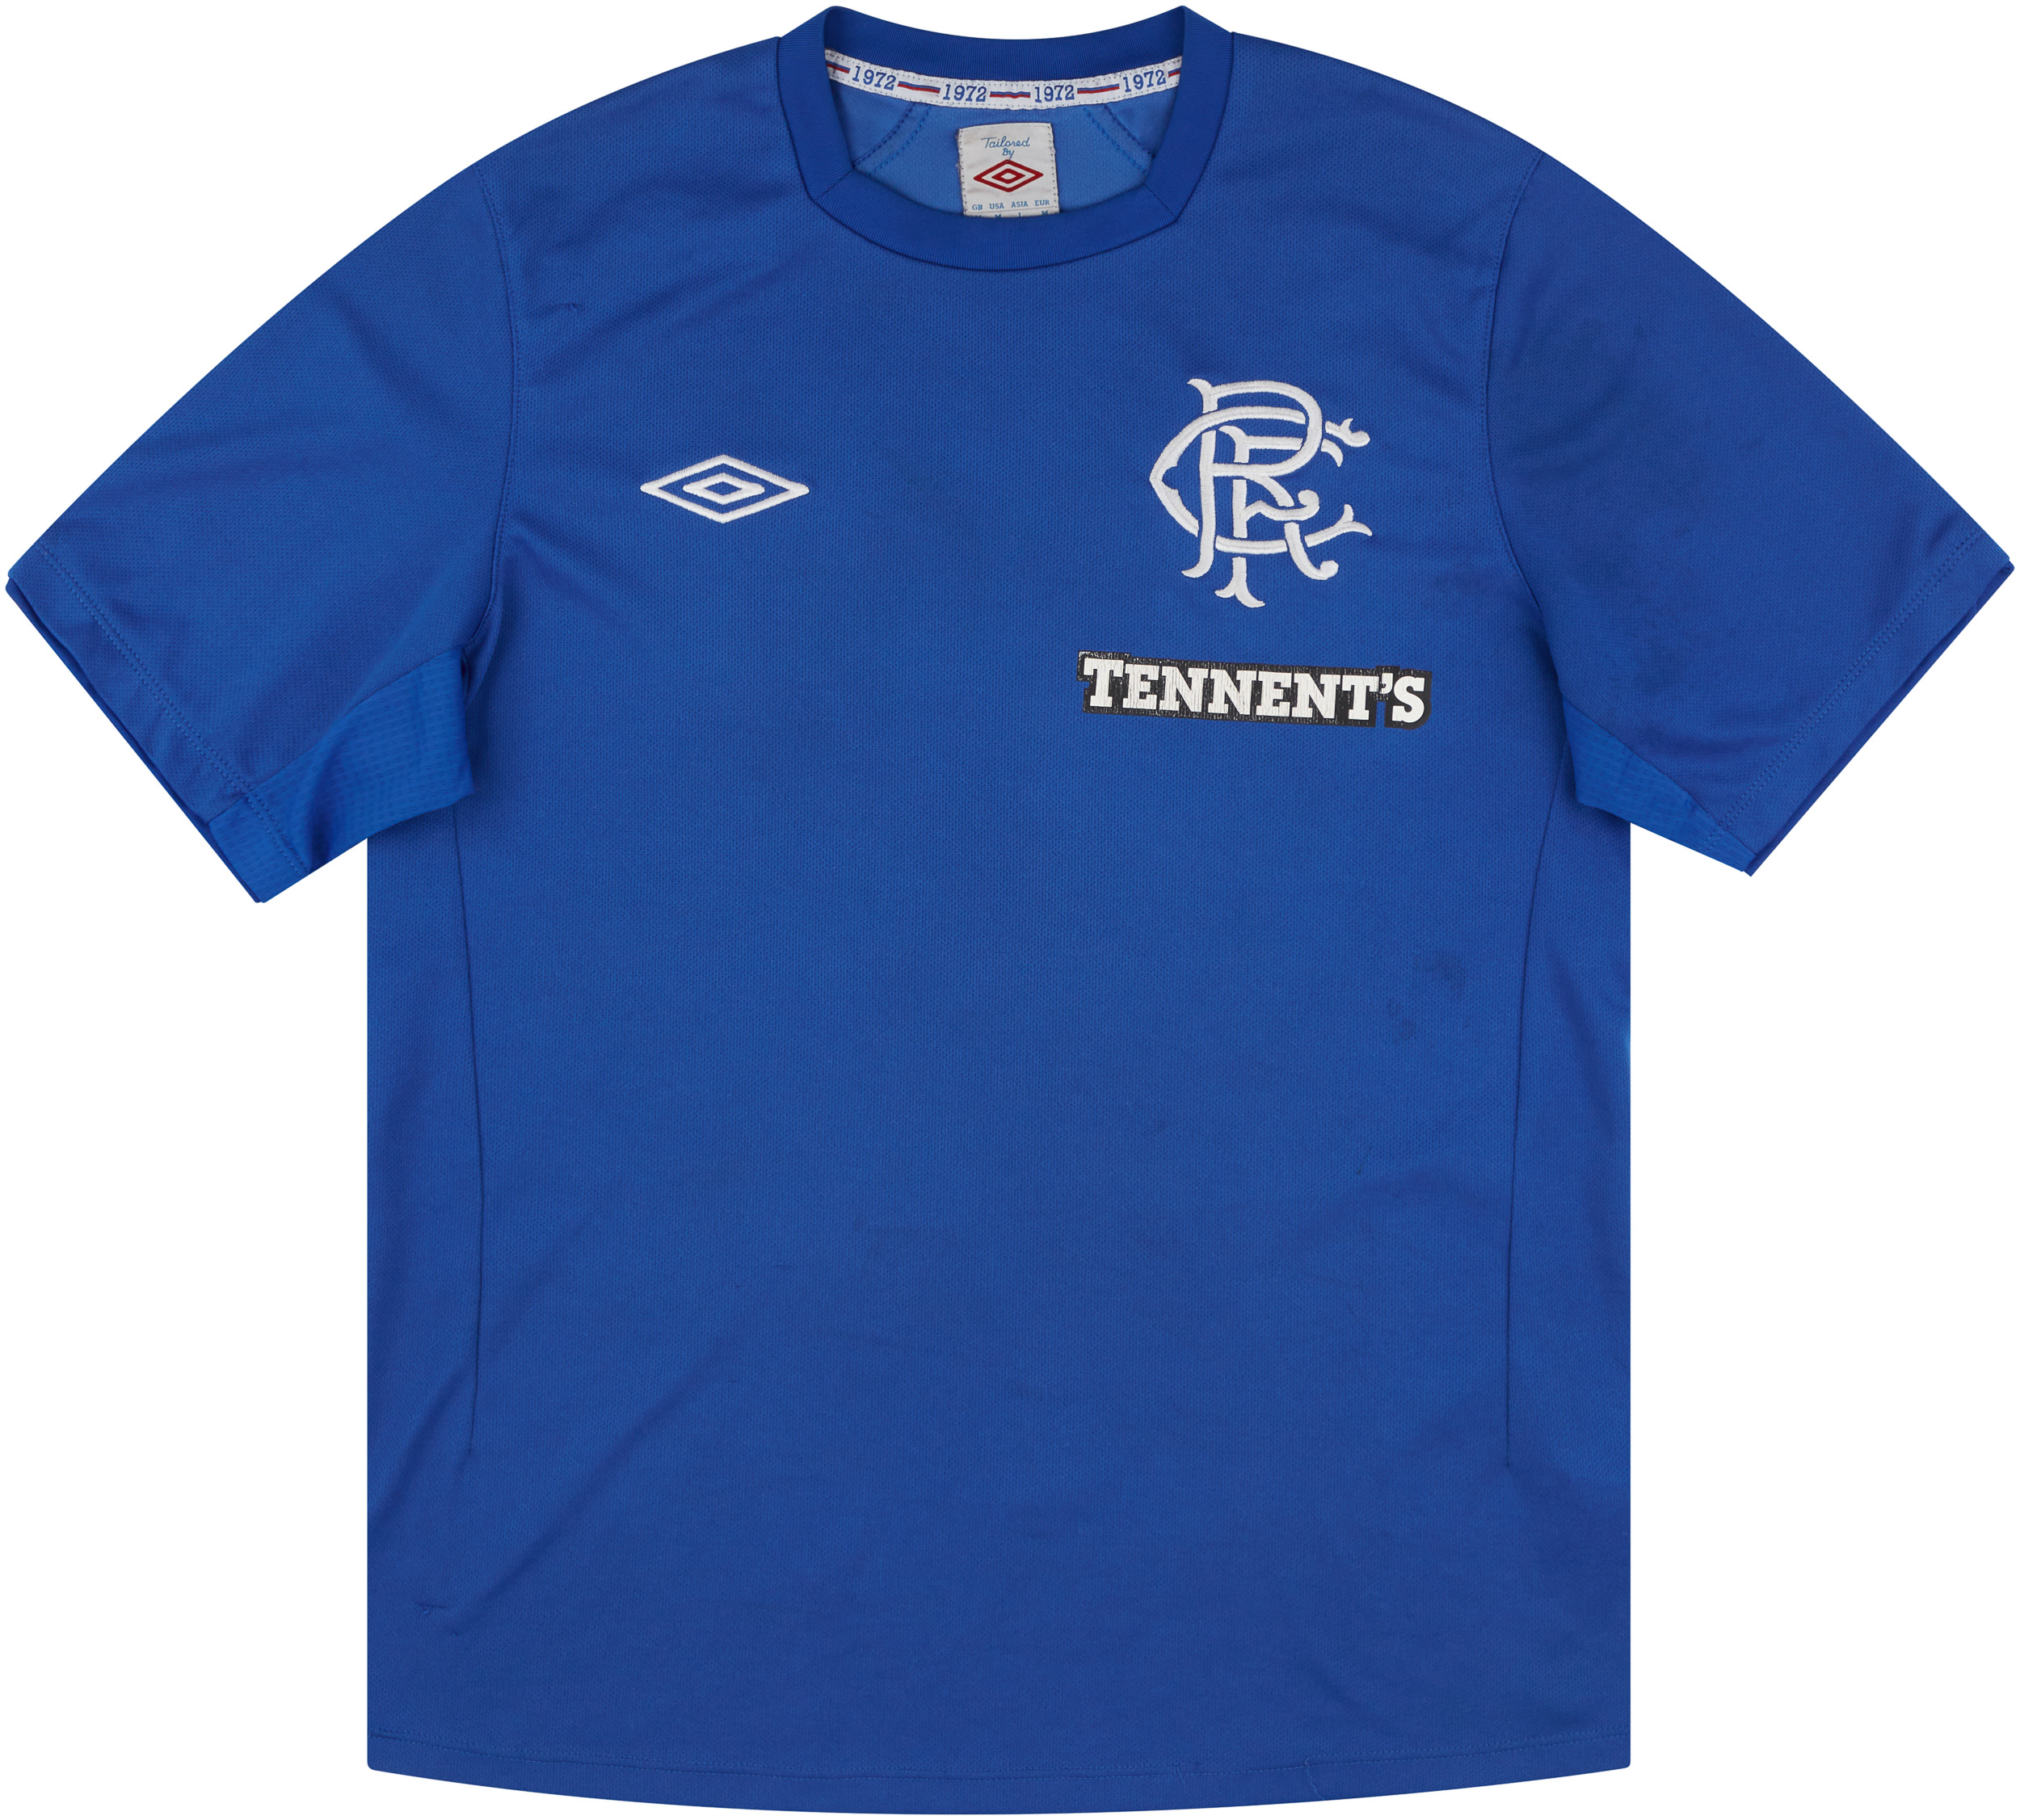 2012-13 Rangers Home Shirt - 5/10 - ()